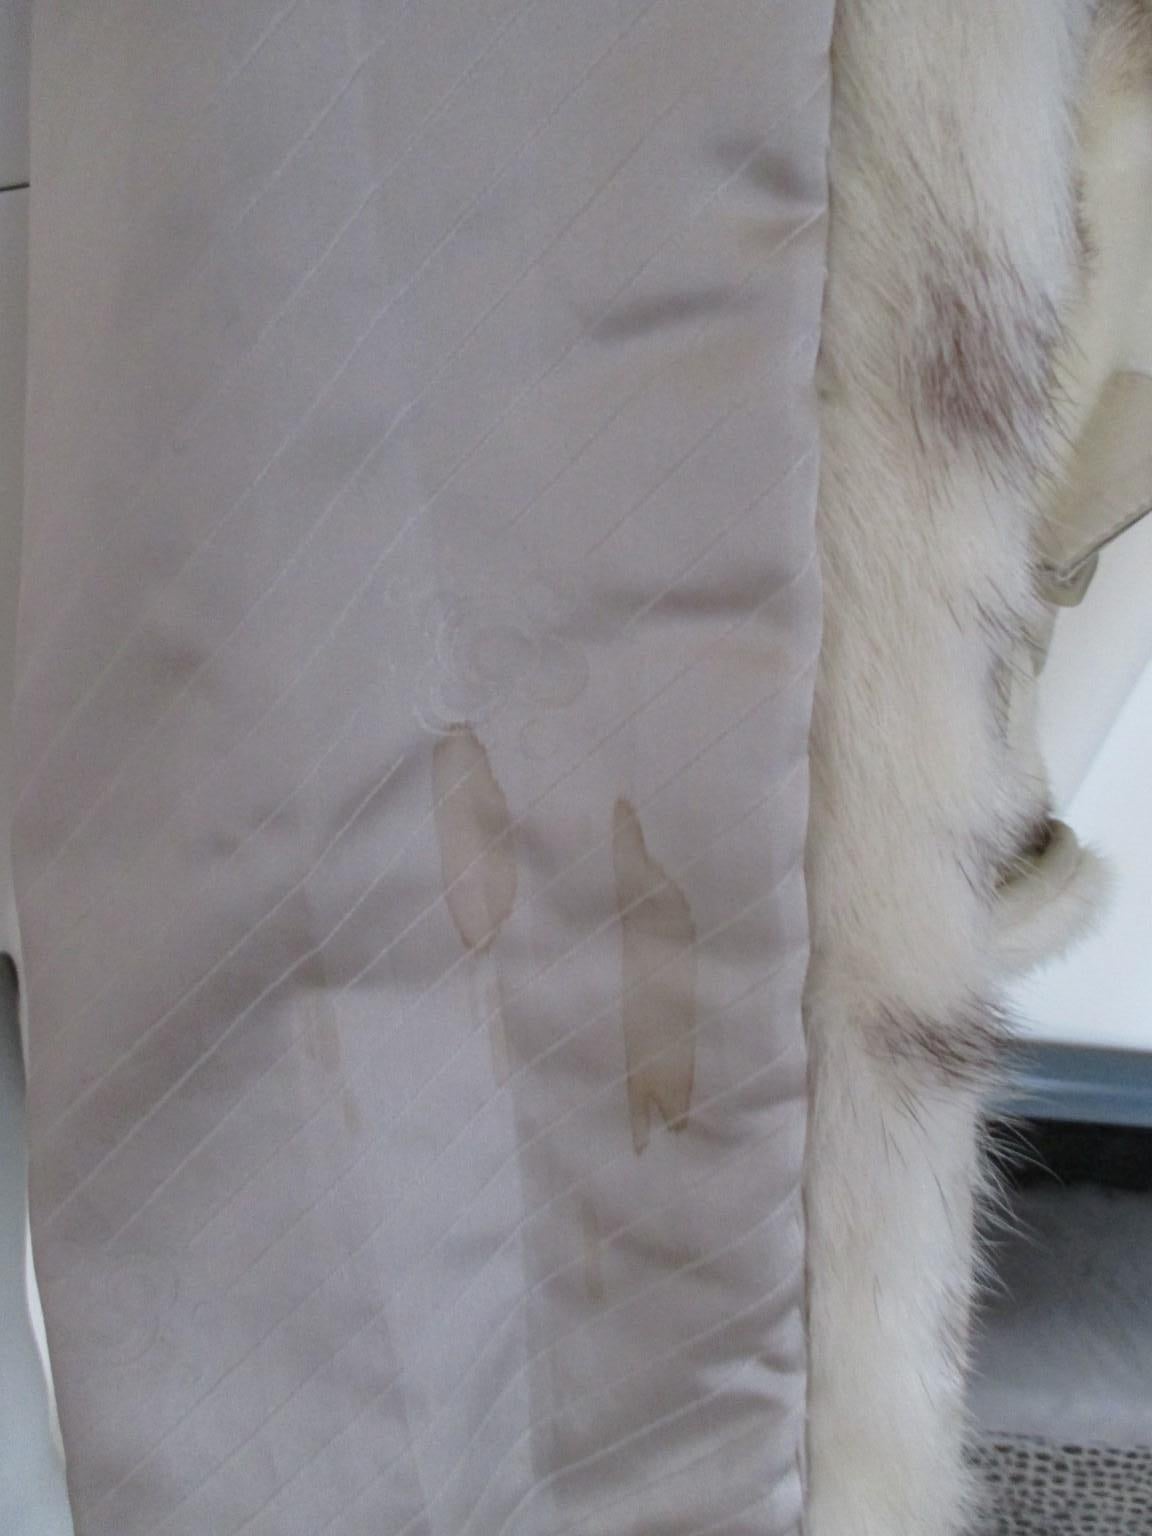  Spotted Design White Mink Fur Coat 1